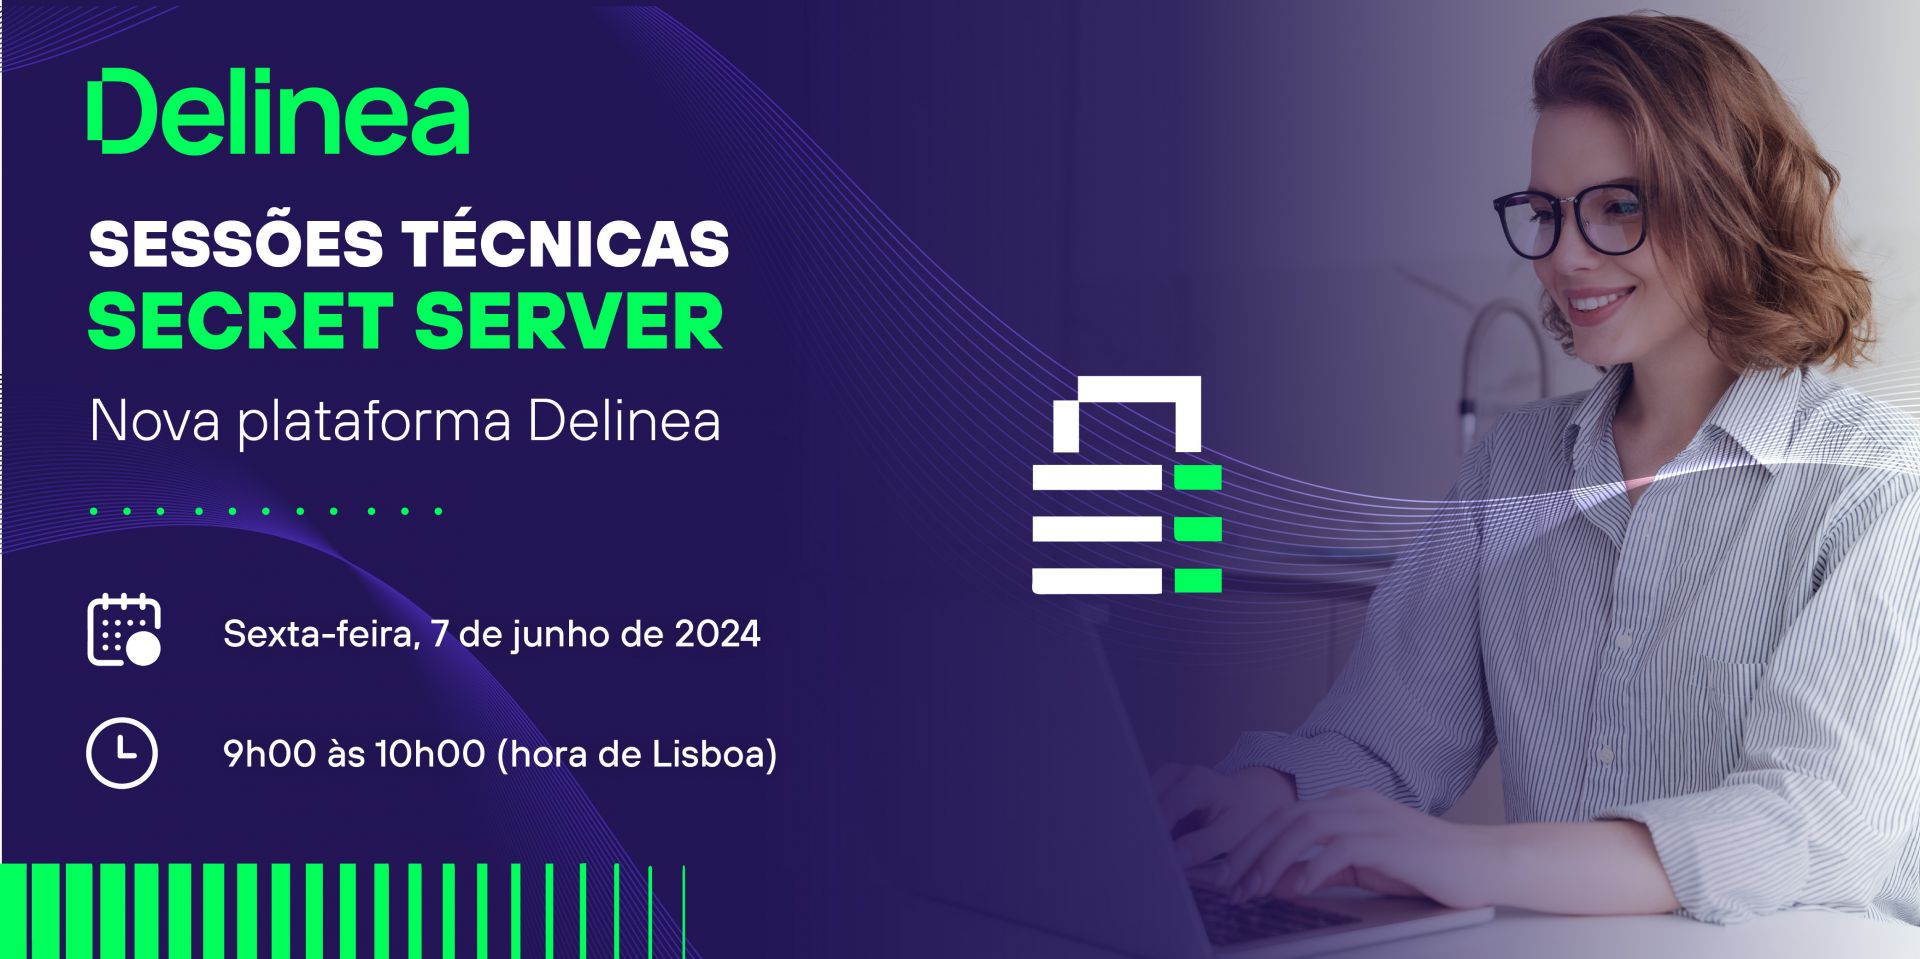 Sessões técnicas com Delinea Secret Server - Nova plataforma Delinea